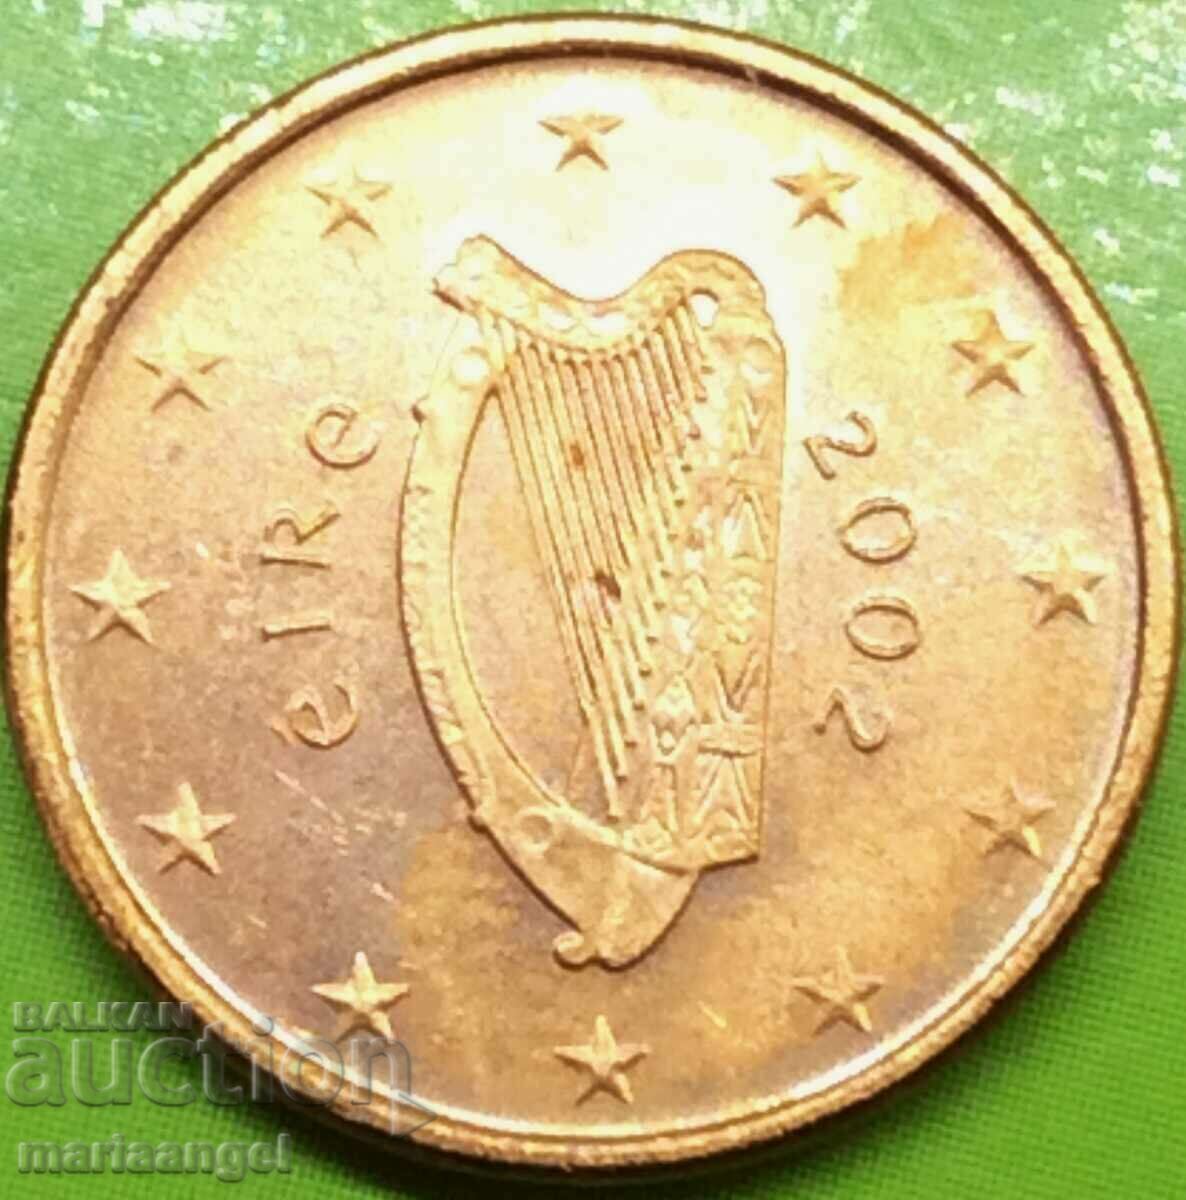 Ιρλανδία 1 λεπτό του ευρώ 2002 - σπάνιο